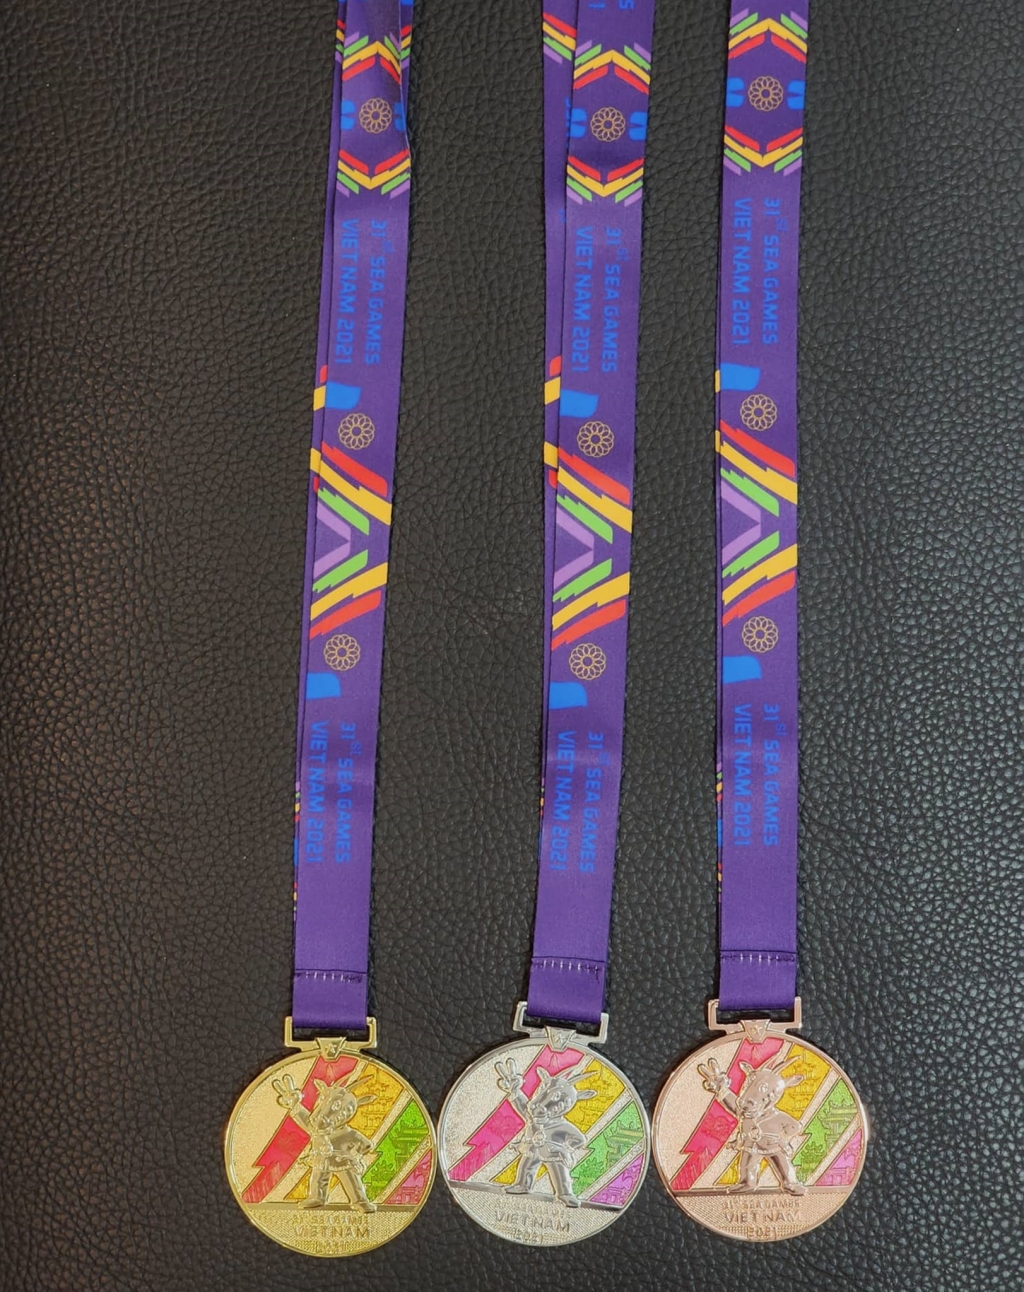 Ra mắt mẫu huy chương được sử dụng tại SEA Games 31